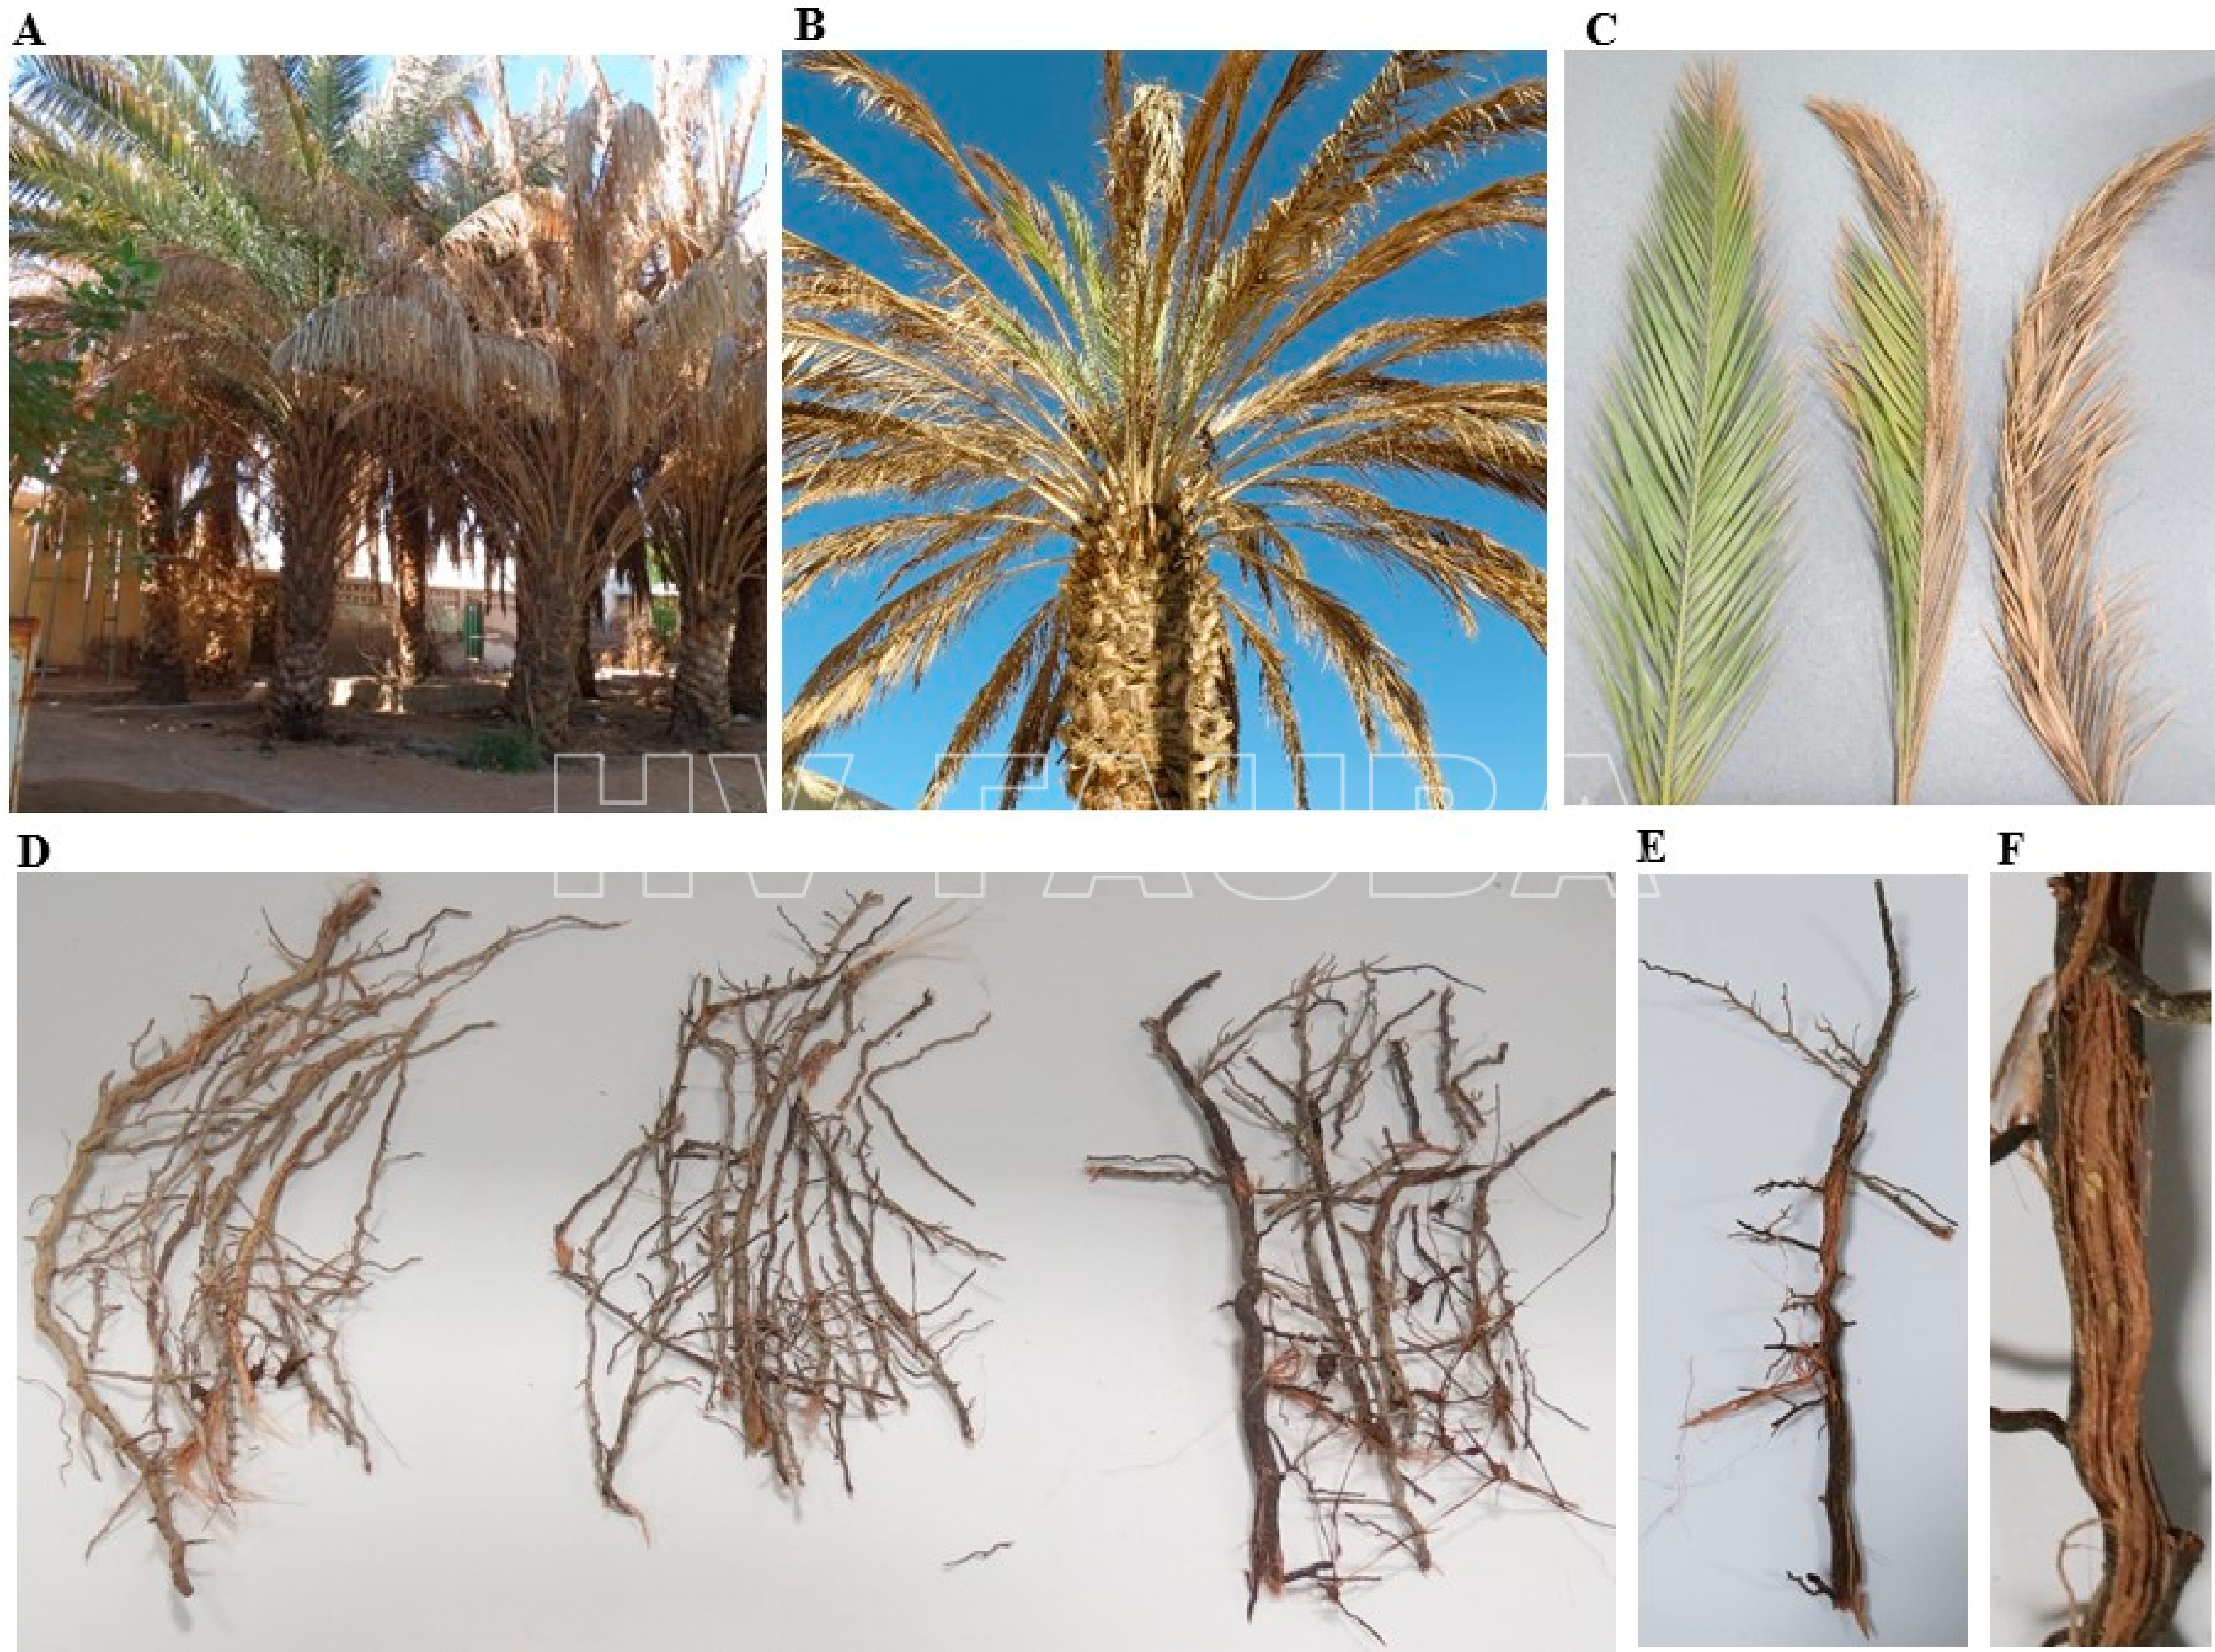 Palmeras datileras que muestran síntomas del síndrome de declive repentino: (A) síntomas en un grupo de árboles; (B) en un árbol entero; (C) progresión de los síntomas en frondas y (D) raíces de plantas enfermas; (E) raíces secas de color marrón; y (F) enrojecimiento de los tejidos vasculares. En (A–F), árboles de dátiles naturalmente infestados con Fusarium spp. Autor: Alwahshi et al., 2019.